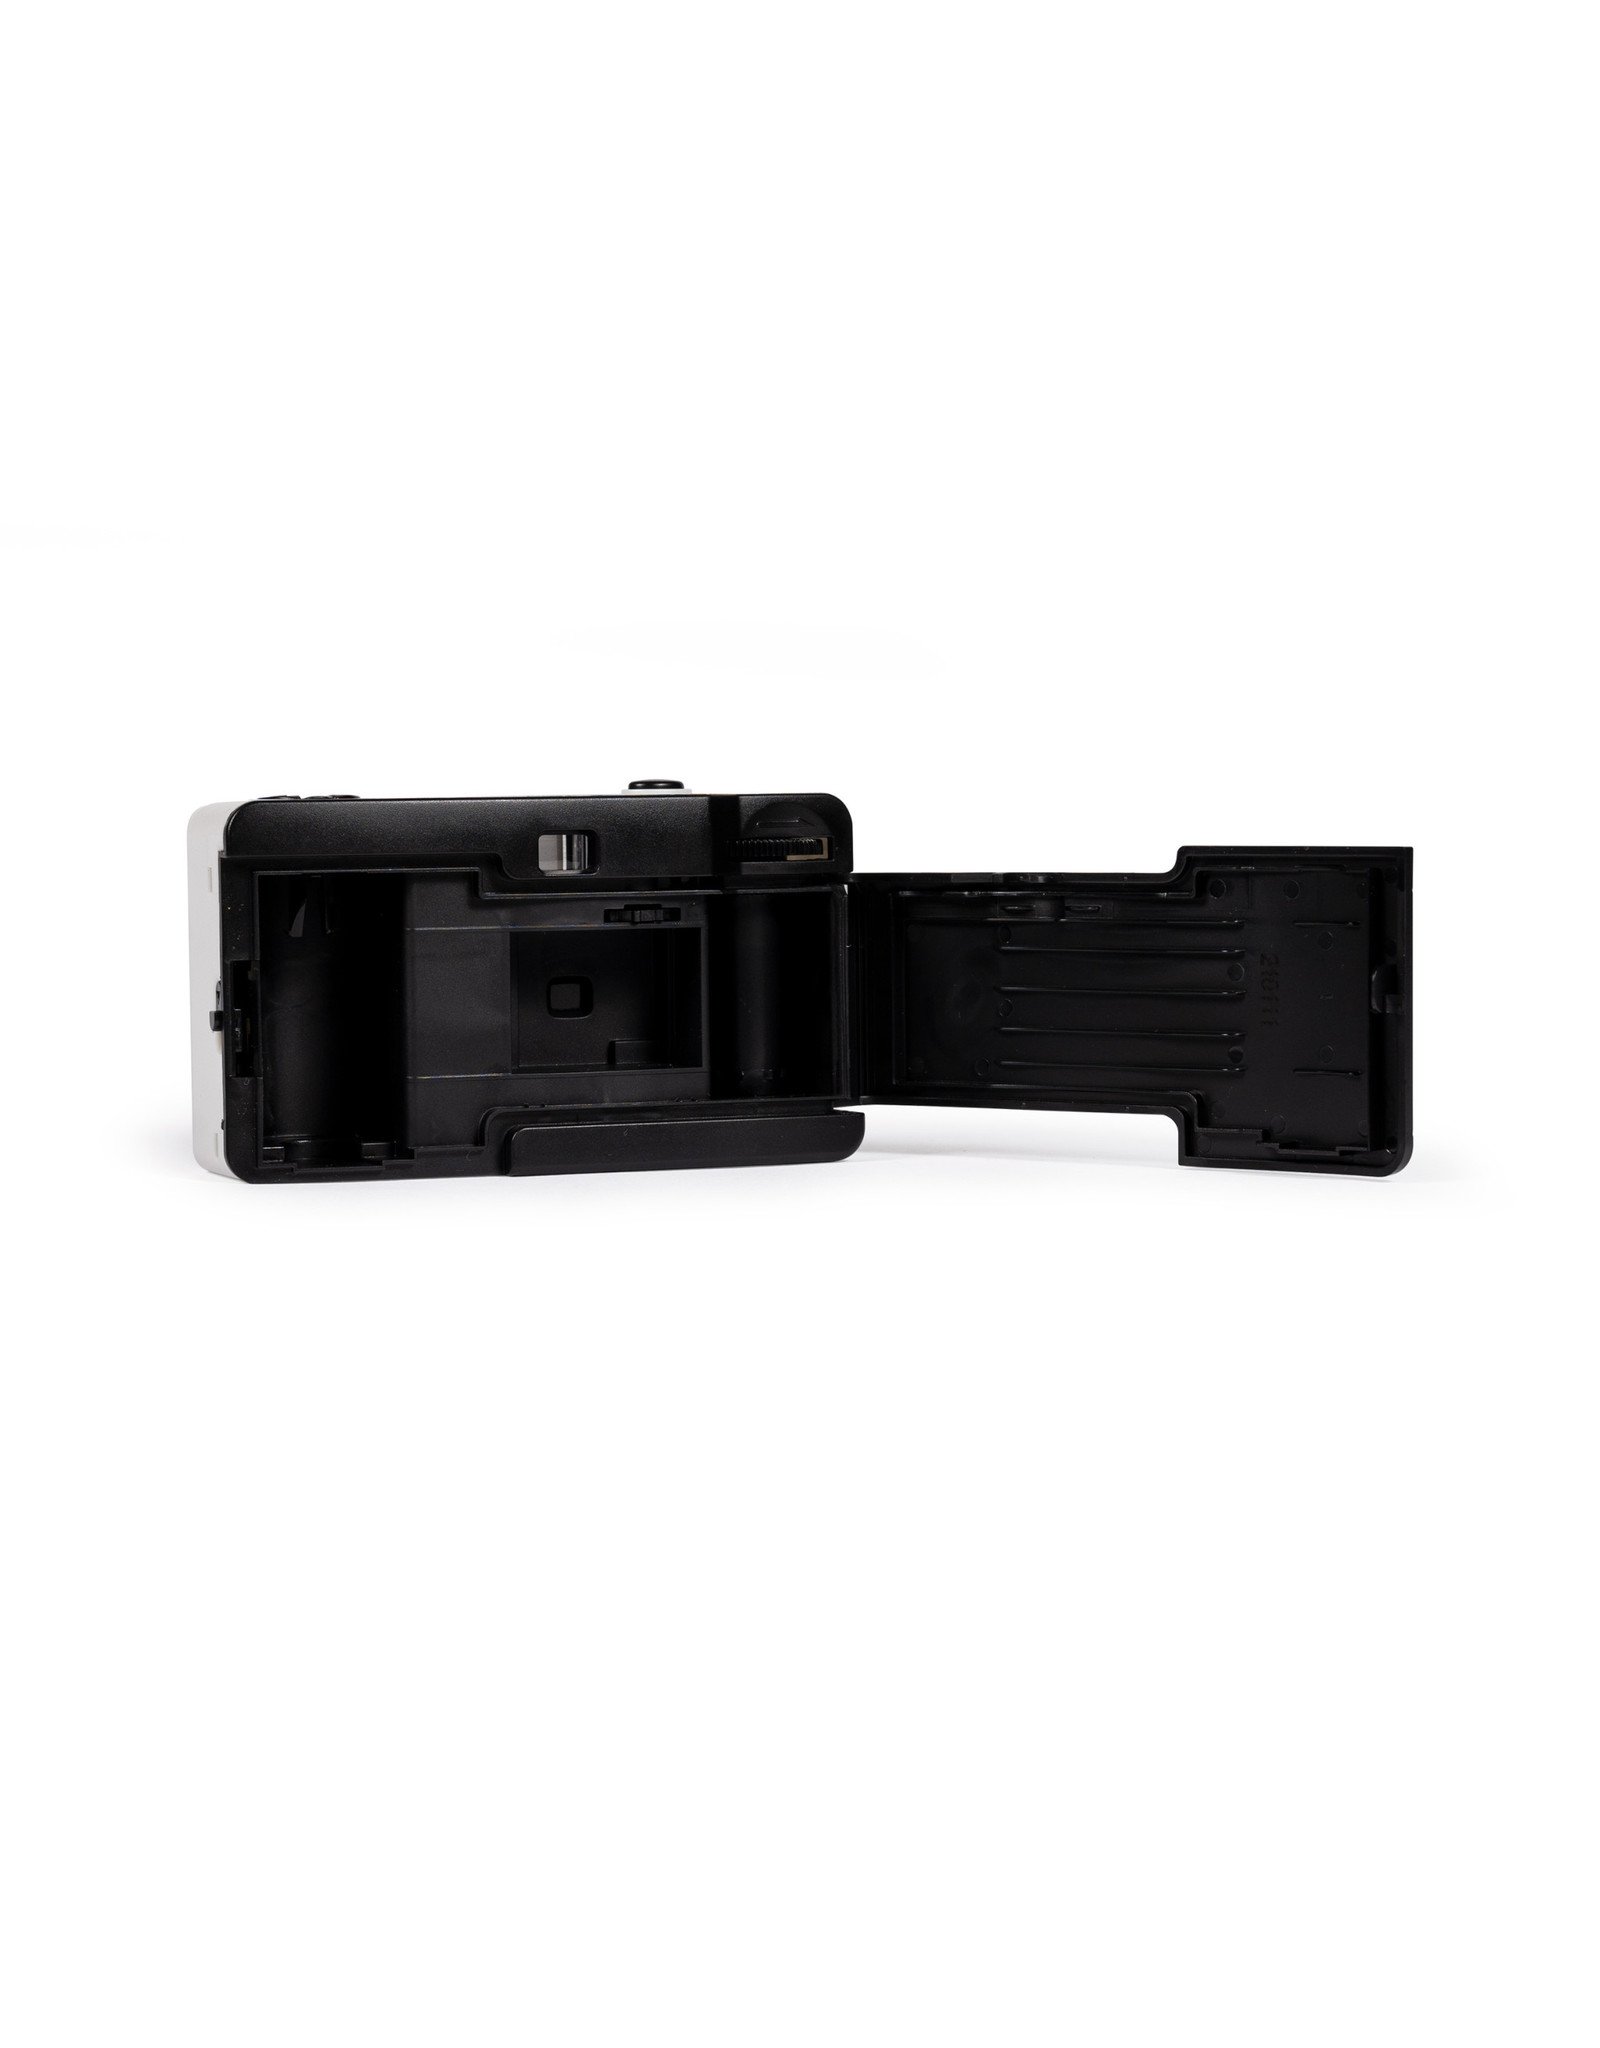 ILFORD Sprite 35-II Camera (Black & Silver)